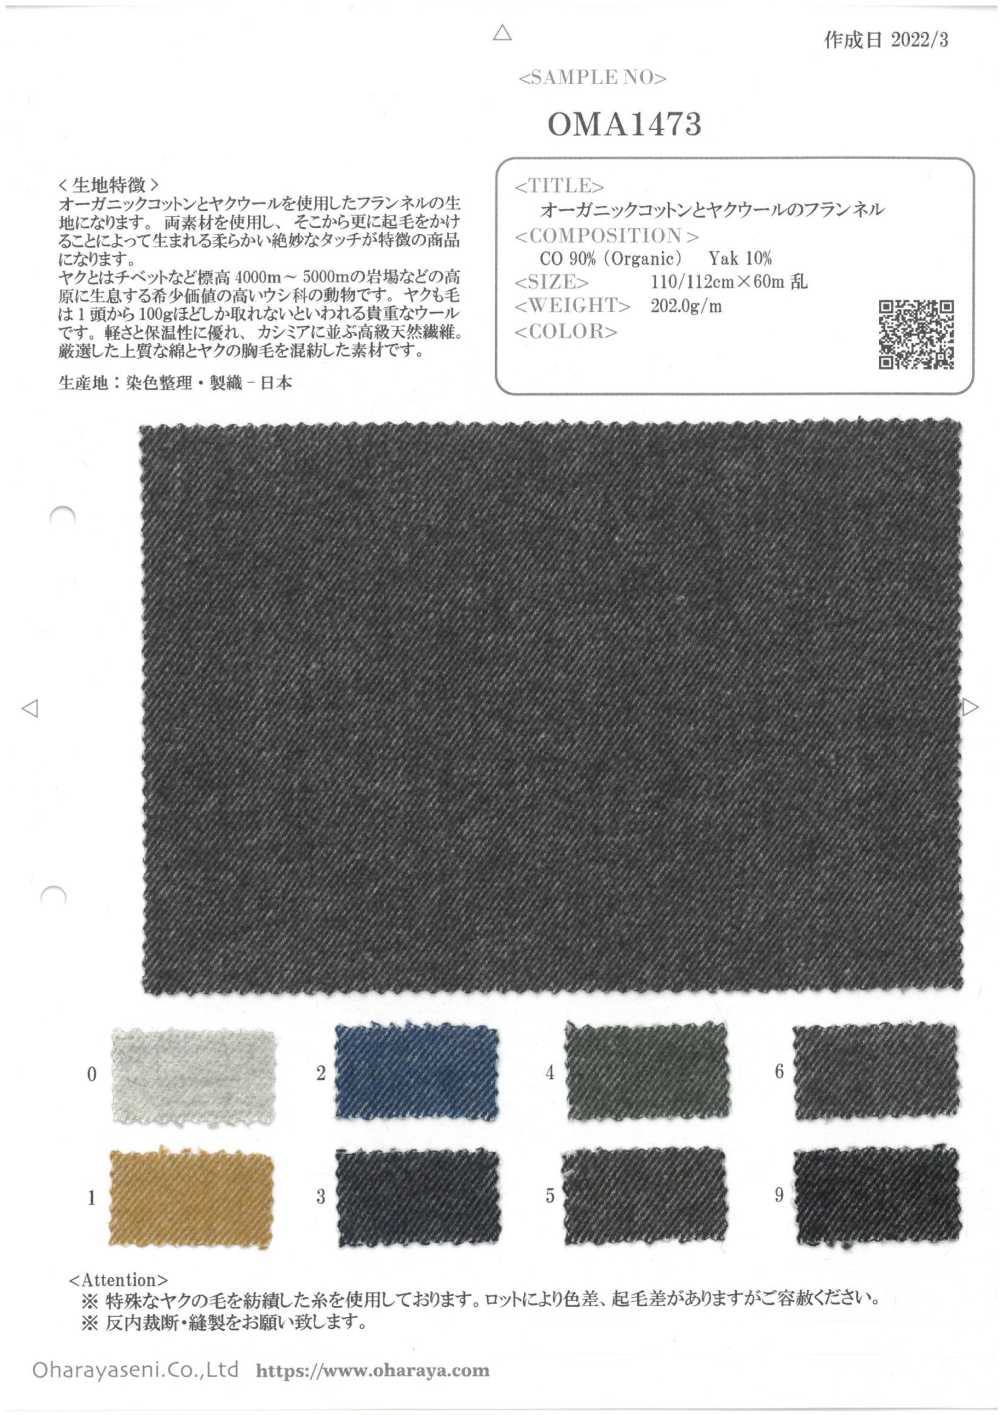 OMA1473 Flanell Aus Bio-Baumwolle Und Yakwolle[Textilgewebe] Oharayaseni